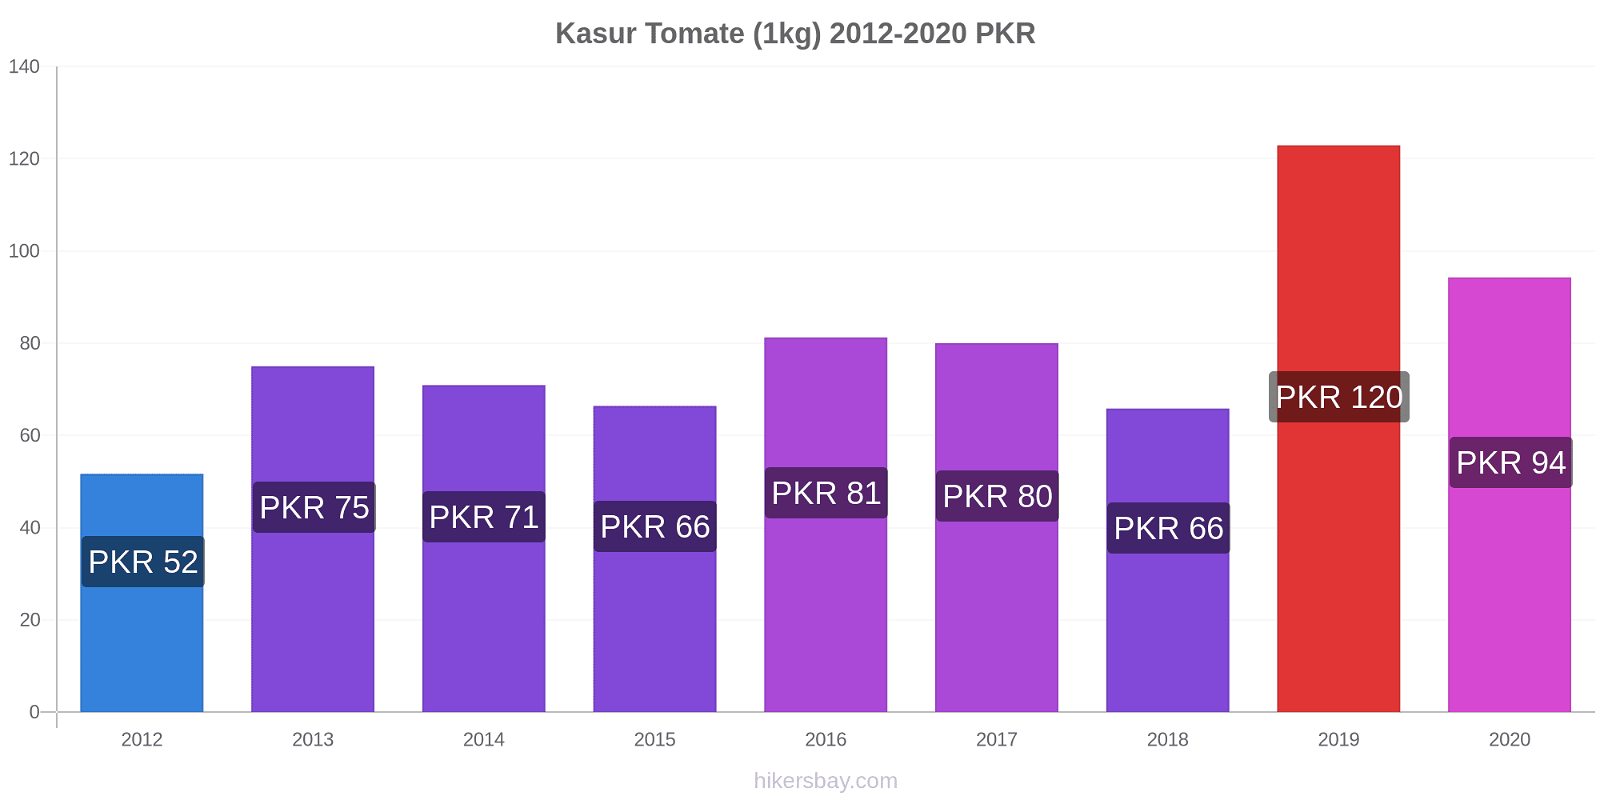 Kasur cambios de precios Tomate (1kg) hikersbay.com